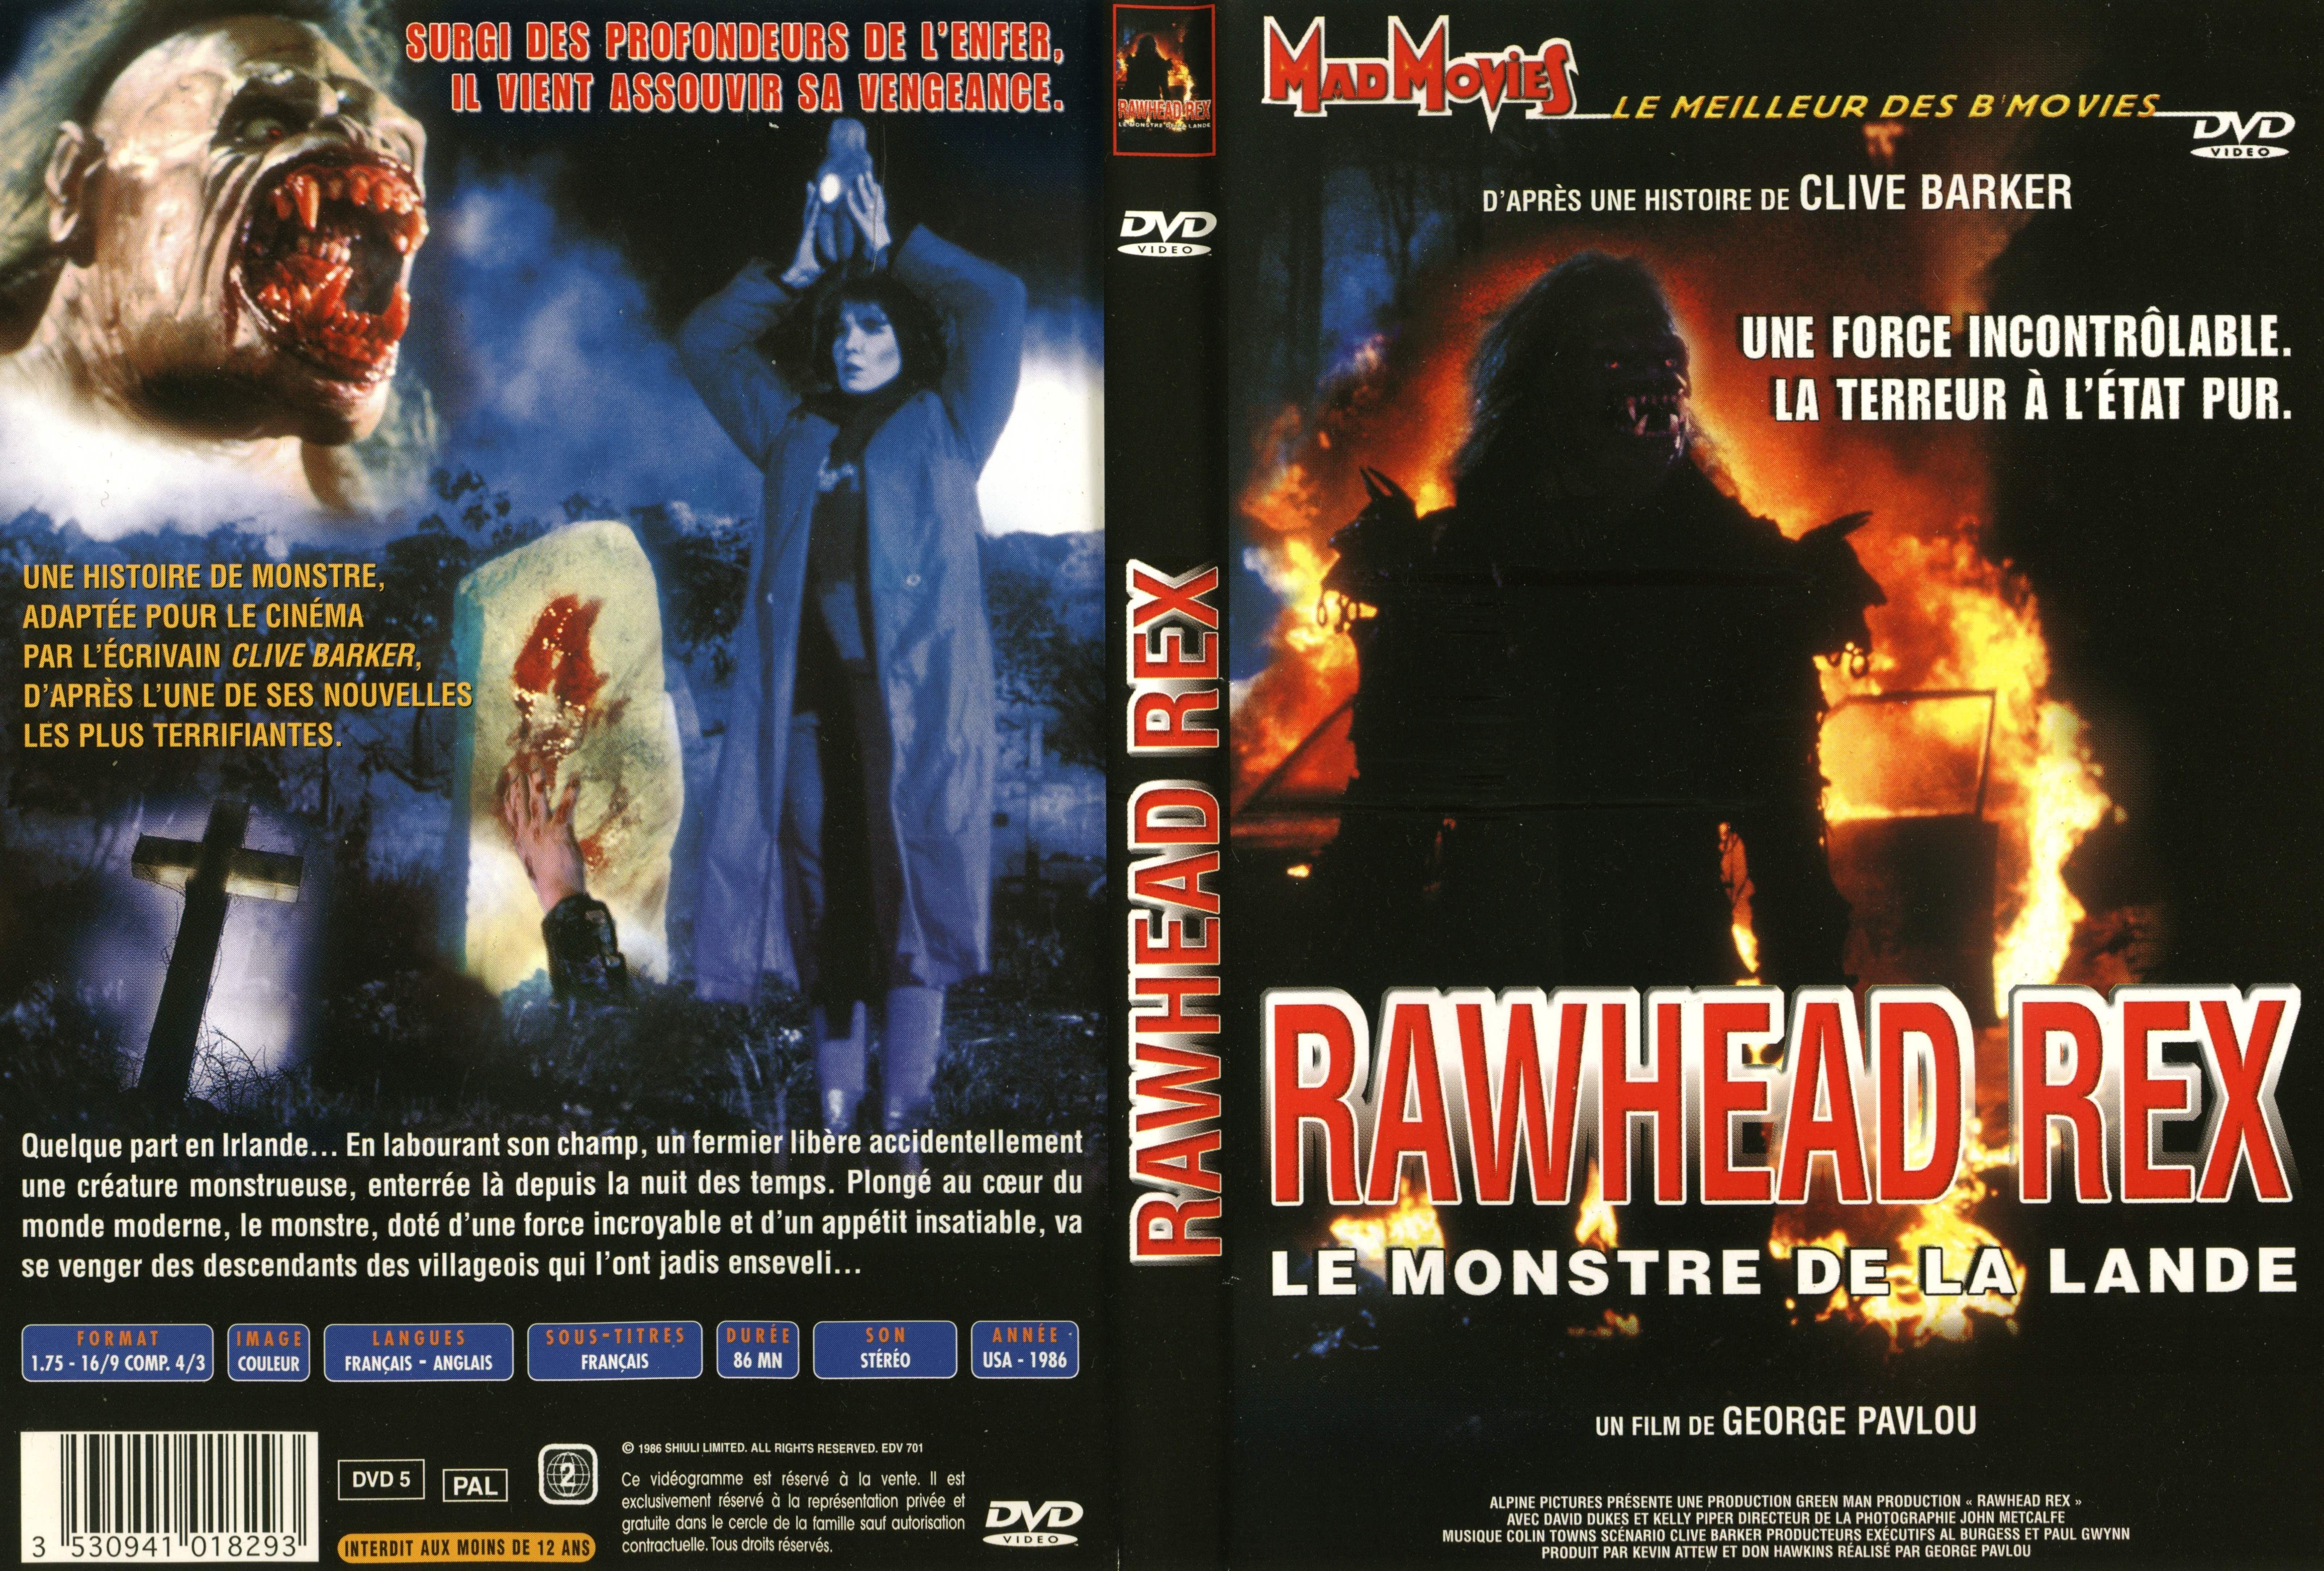 Jaquette DVD Rawhead rex